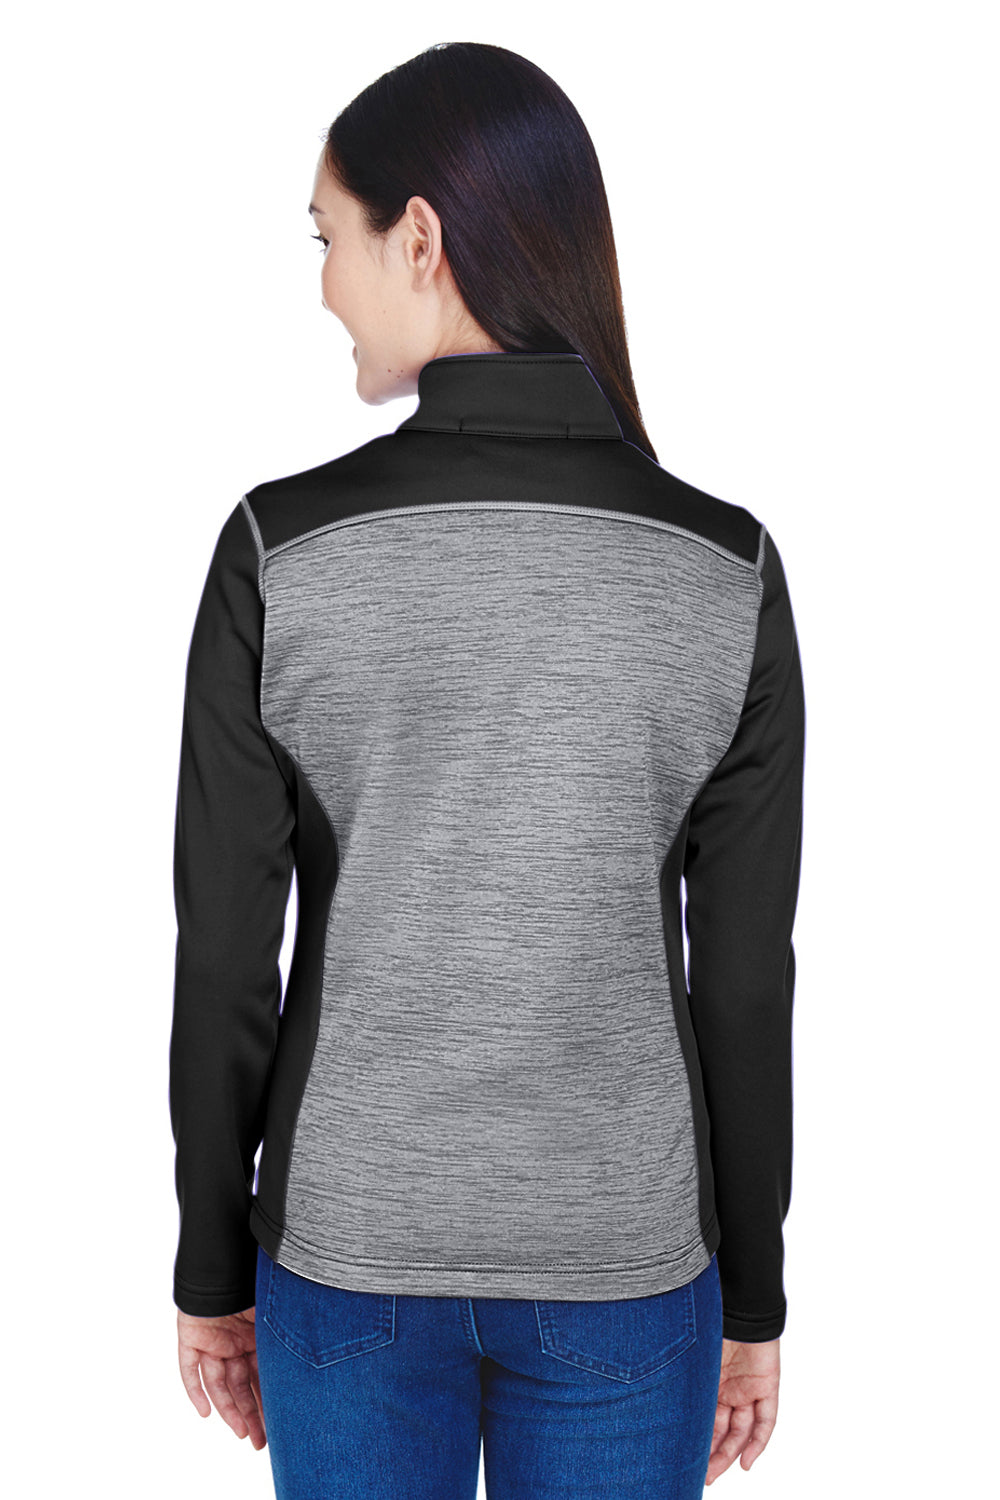 Devon & Jones DG796W Womens Newbury Fleece Full Zip Sweatshirt Grey/Black Back